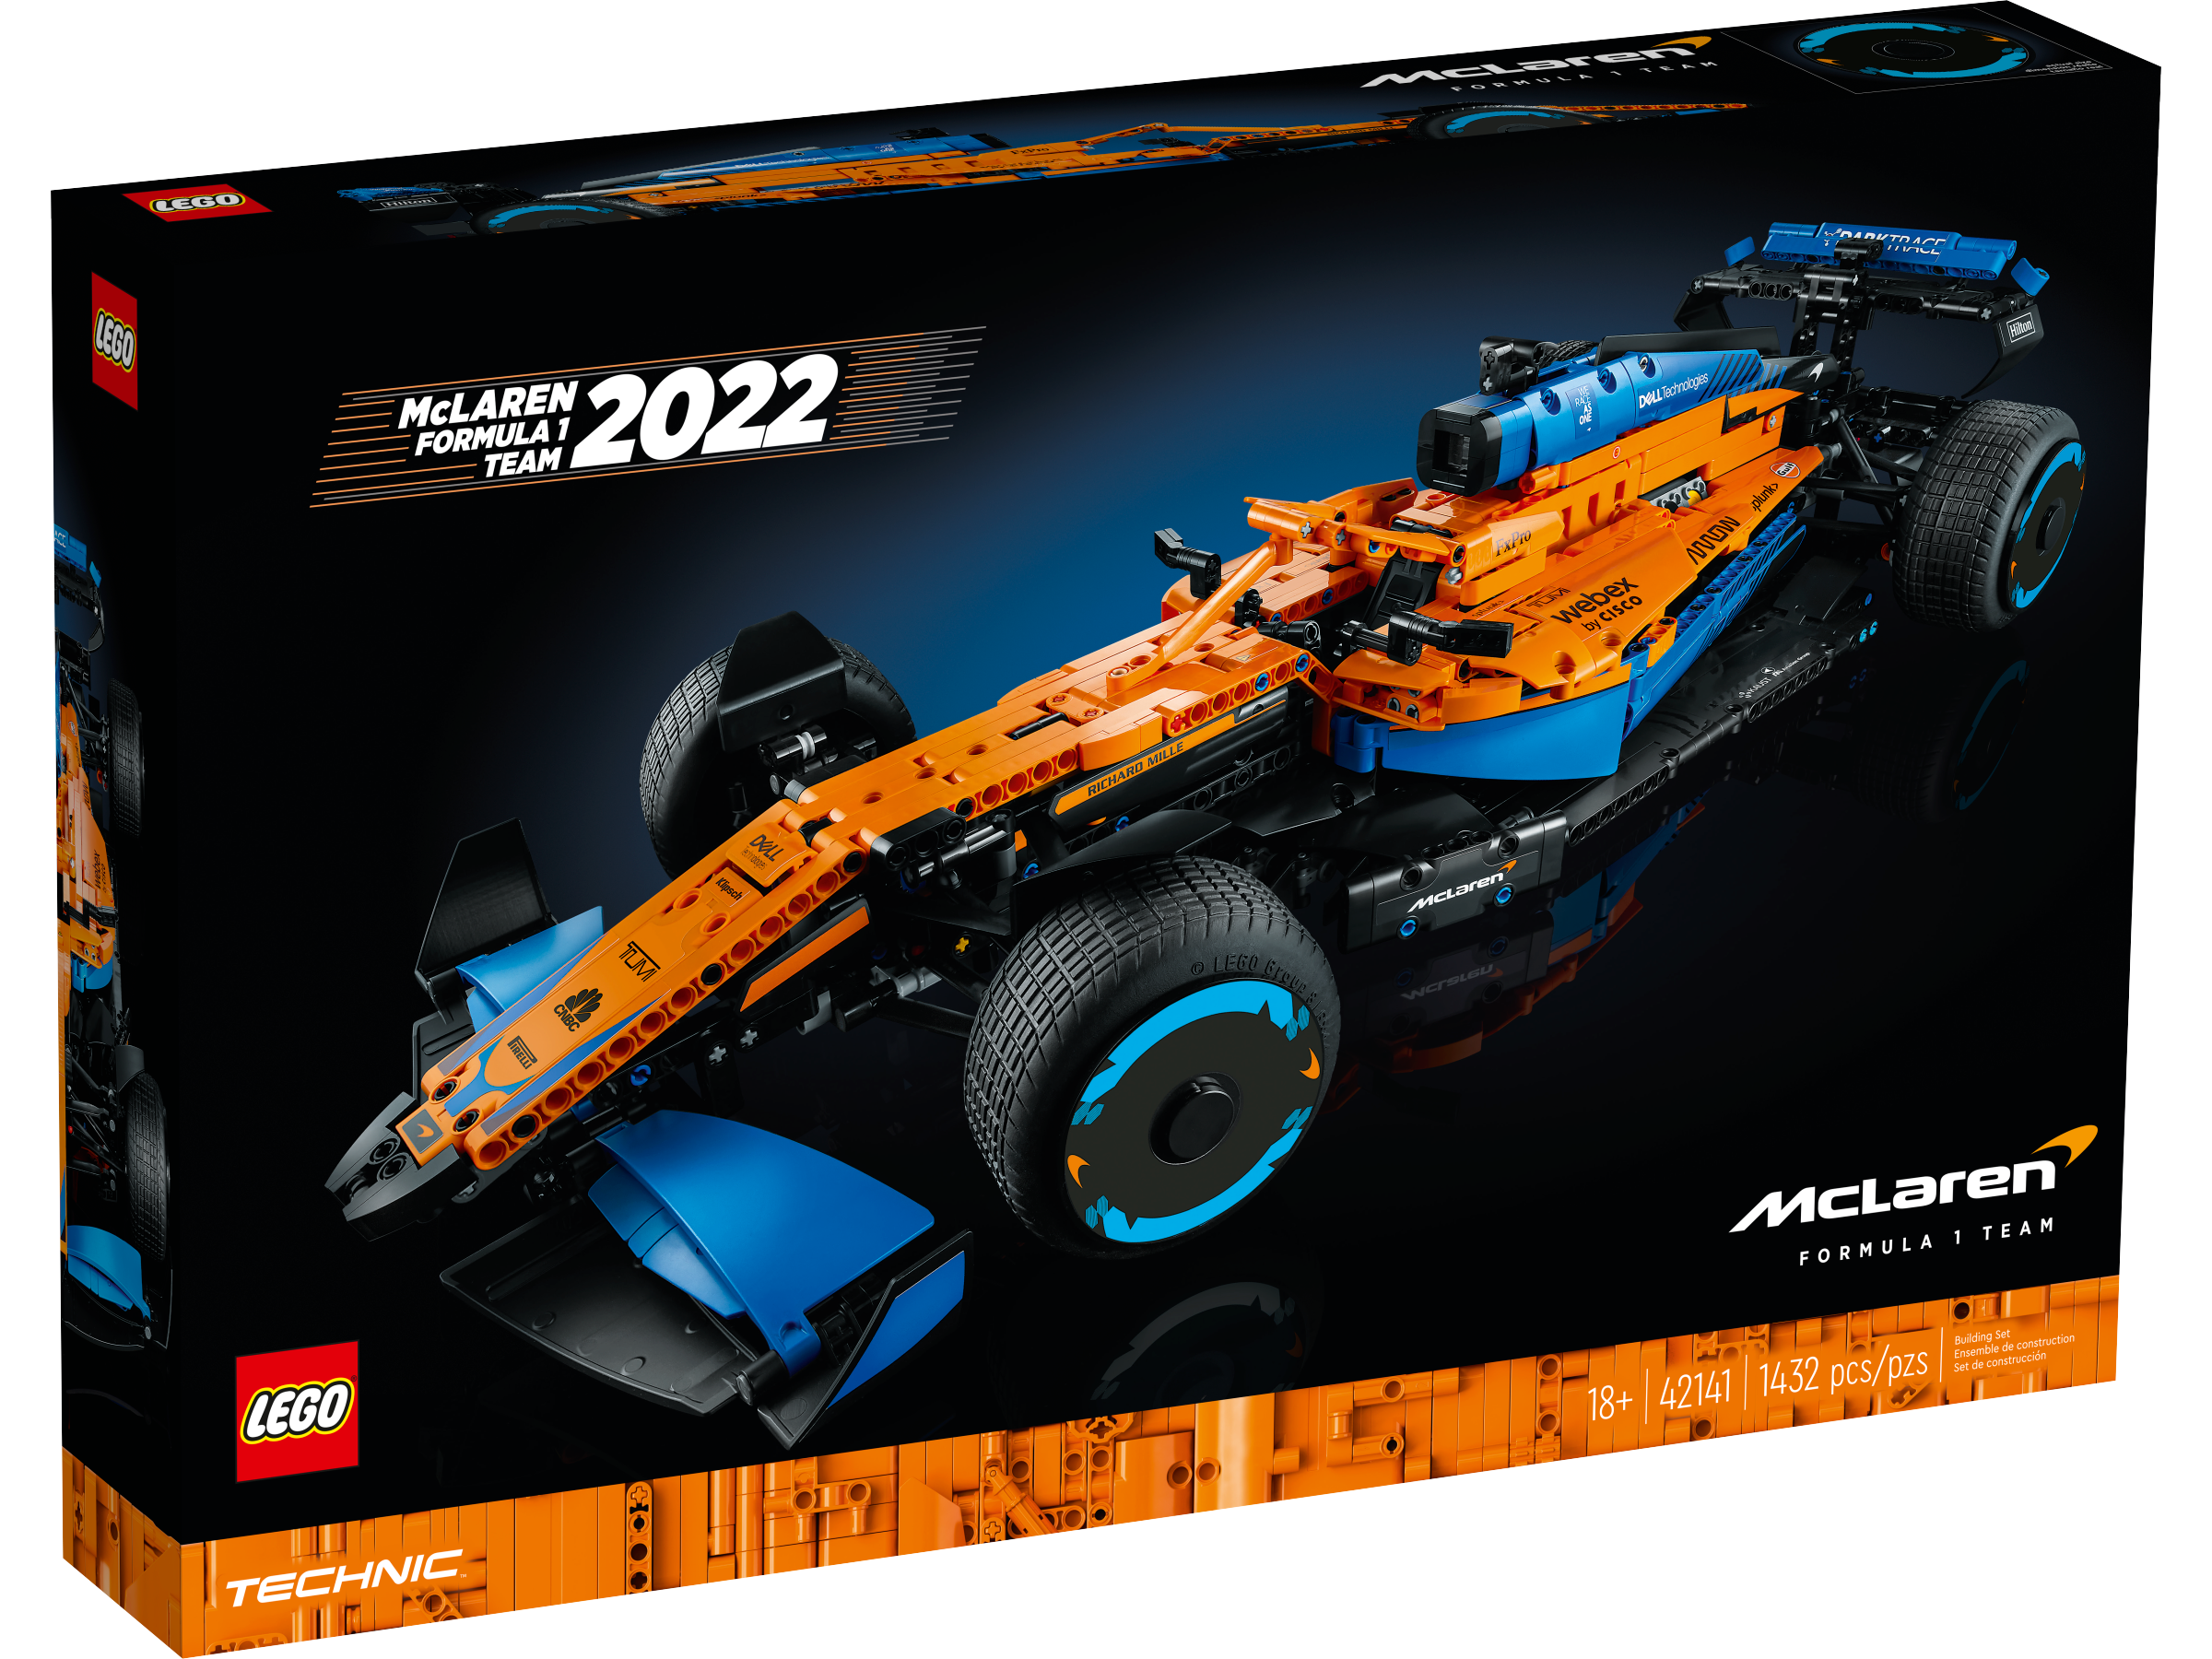 LEGO Technic McLaren Formel 1™ Rennwagen (42141) - im GOLDSTIEN.SHOP verfügbar mit Gratisversand ab Schweizer Lager! (5702017160795)